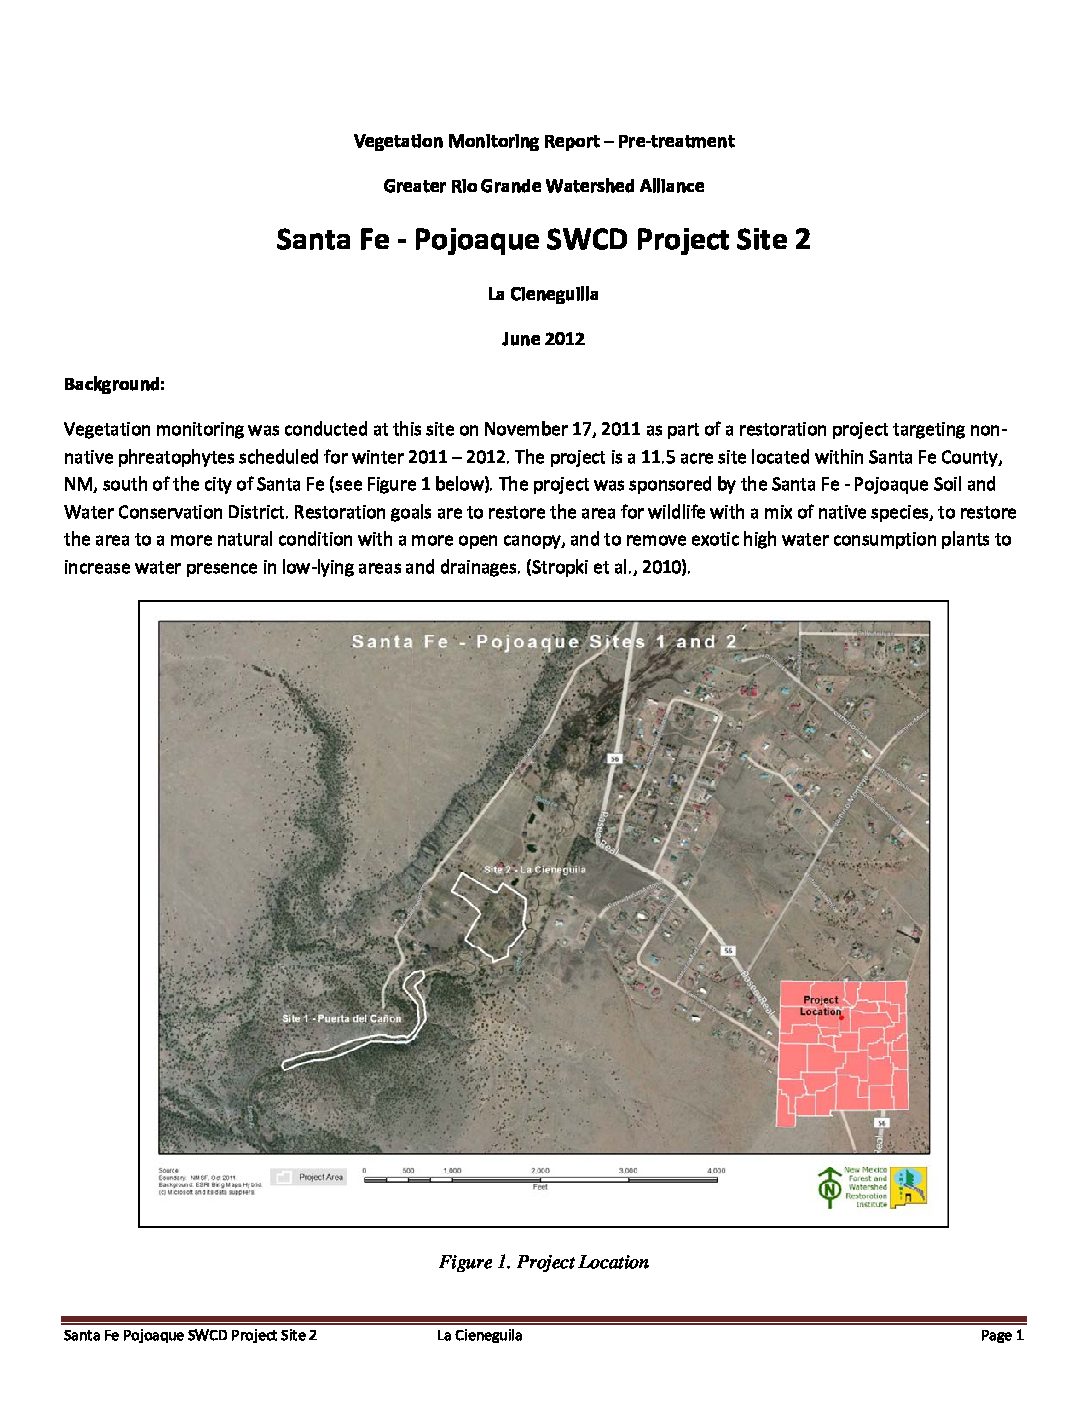 La Cieneguilla, Santa Fe-Pojoaque SWCD, Project Site 2, 2012 Pre-treatment Monitoring